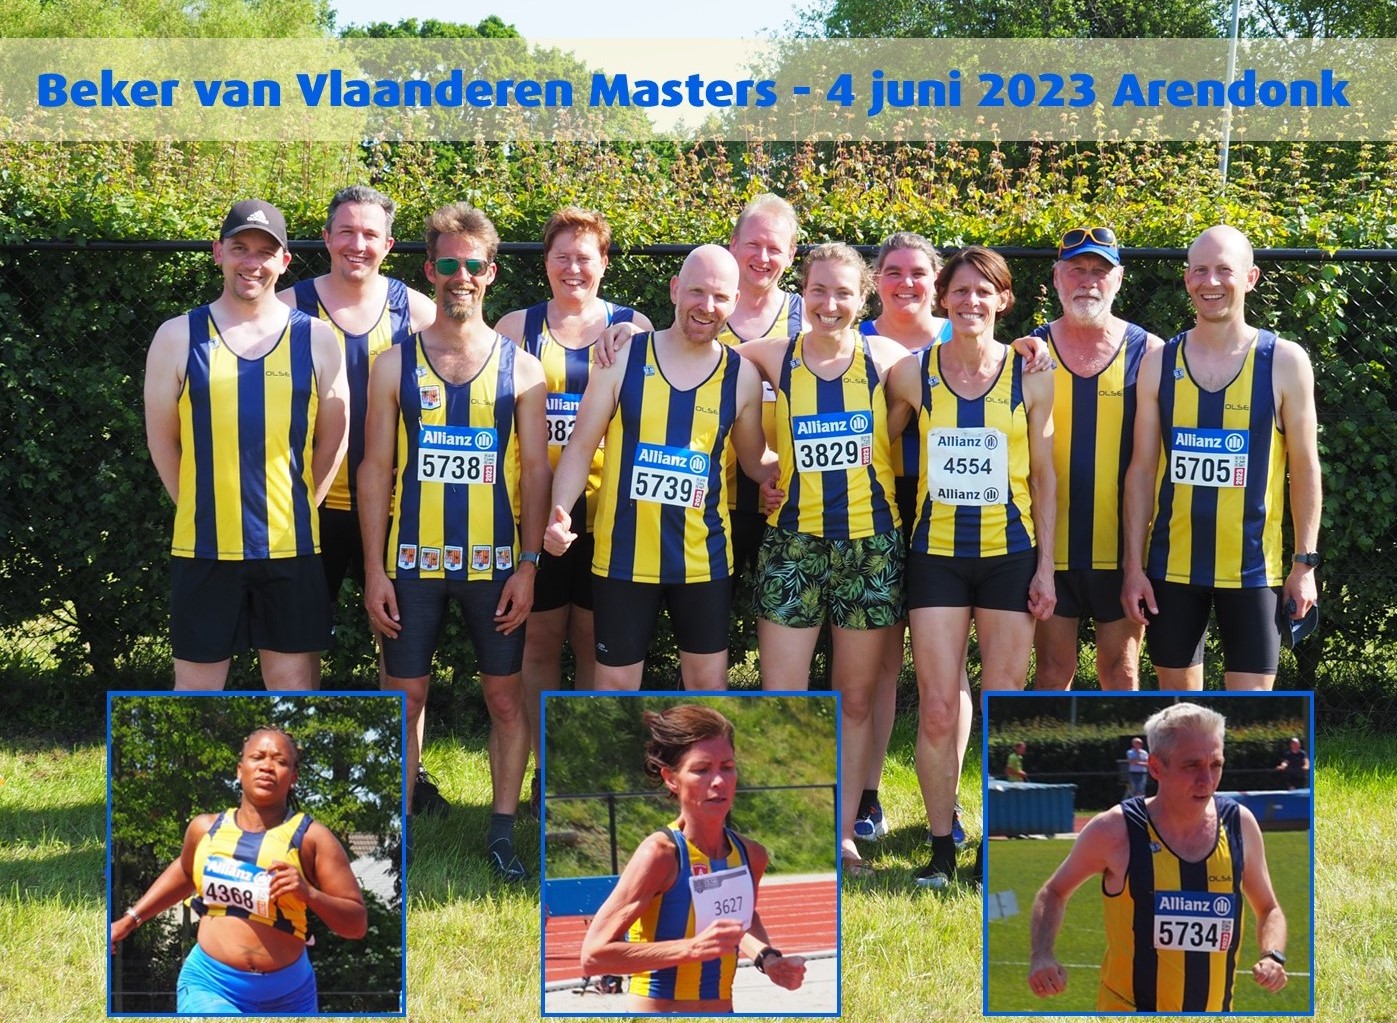 BVV Masters Arendonk: 9de plaats met onuitgegeven team